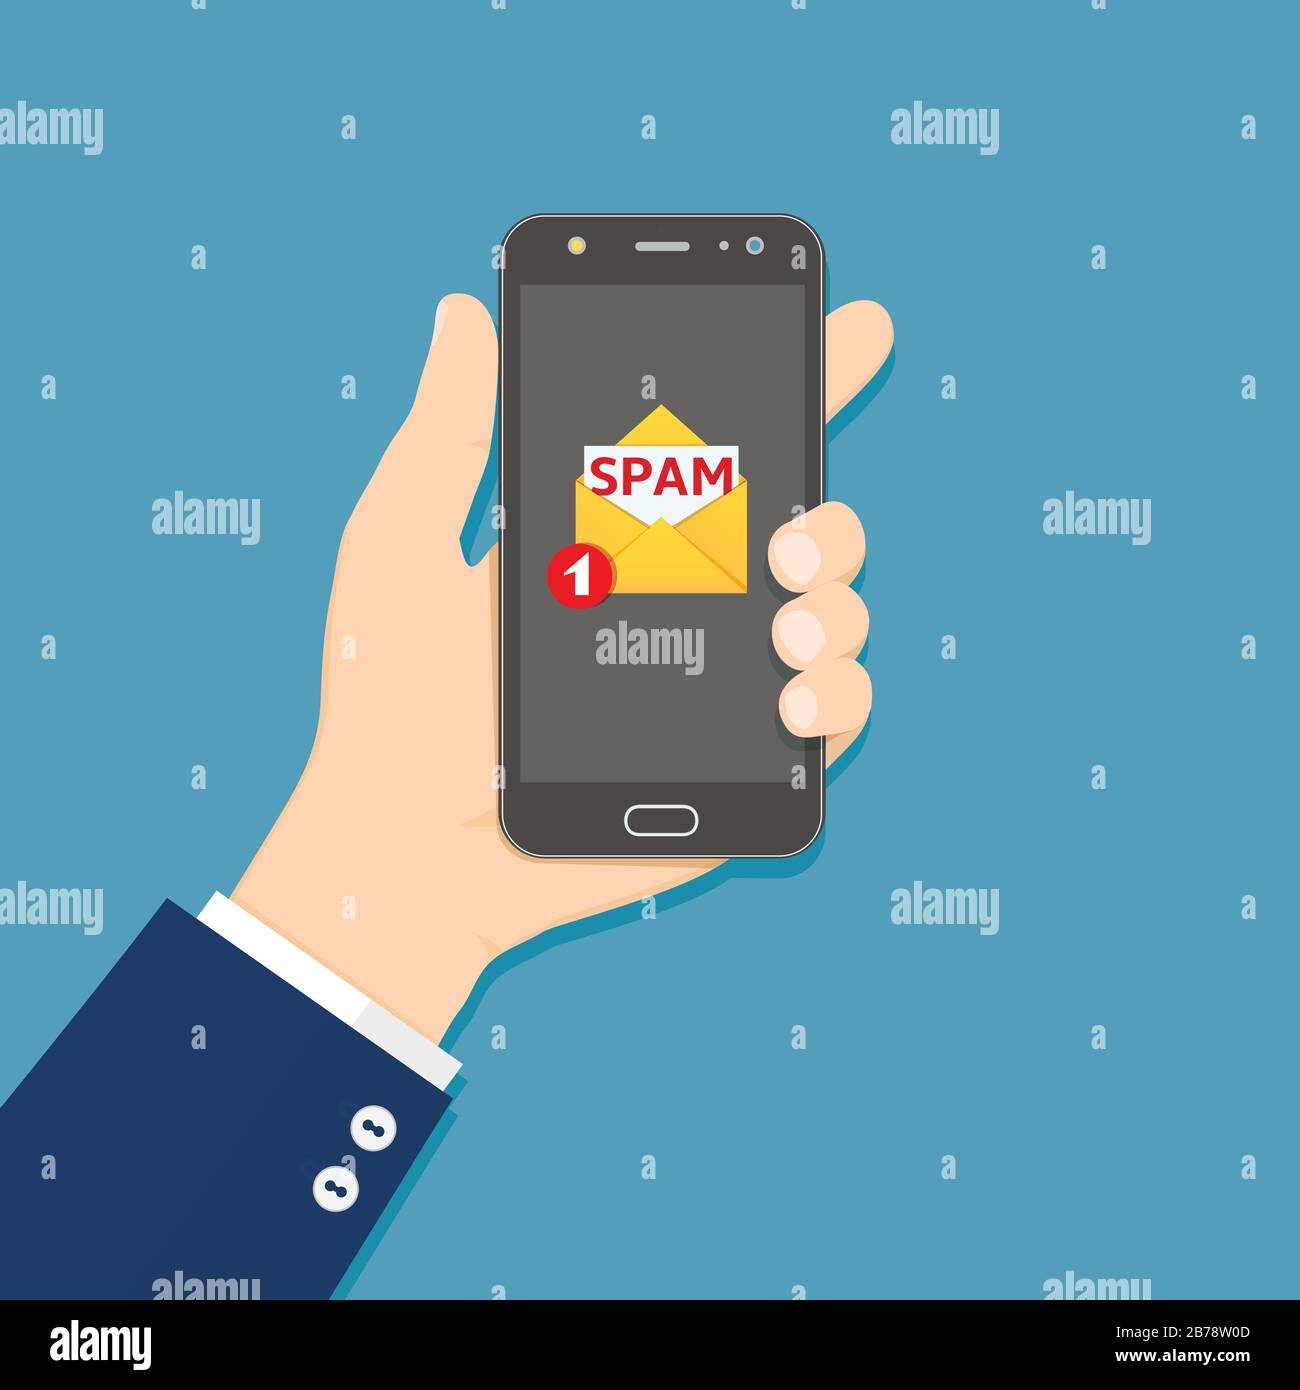 Smartphone mit Spam-E-Mail auf dem Bildschirm in der Hand halten. Konzept der Spam-E-Mail-Benachrichtigung auf dem Mobiltelefon. Vektorgrafiken in flacher Ausführung. Stock Vektor